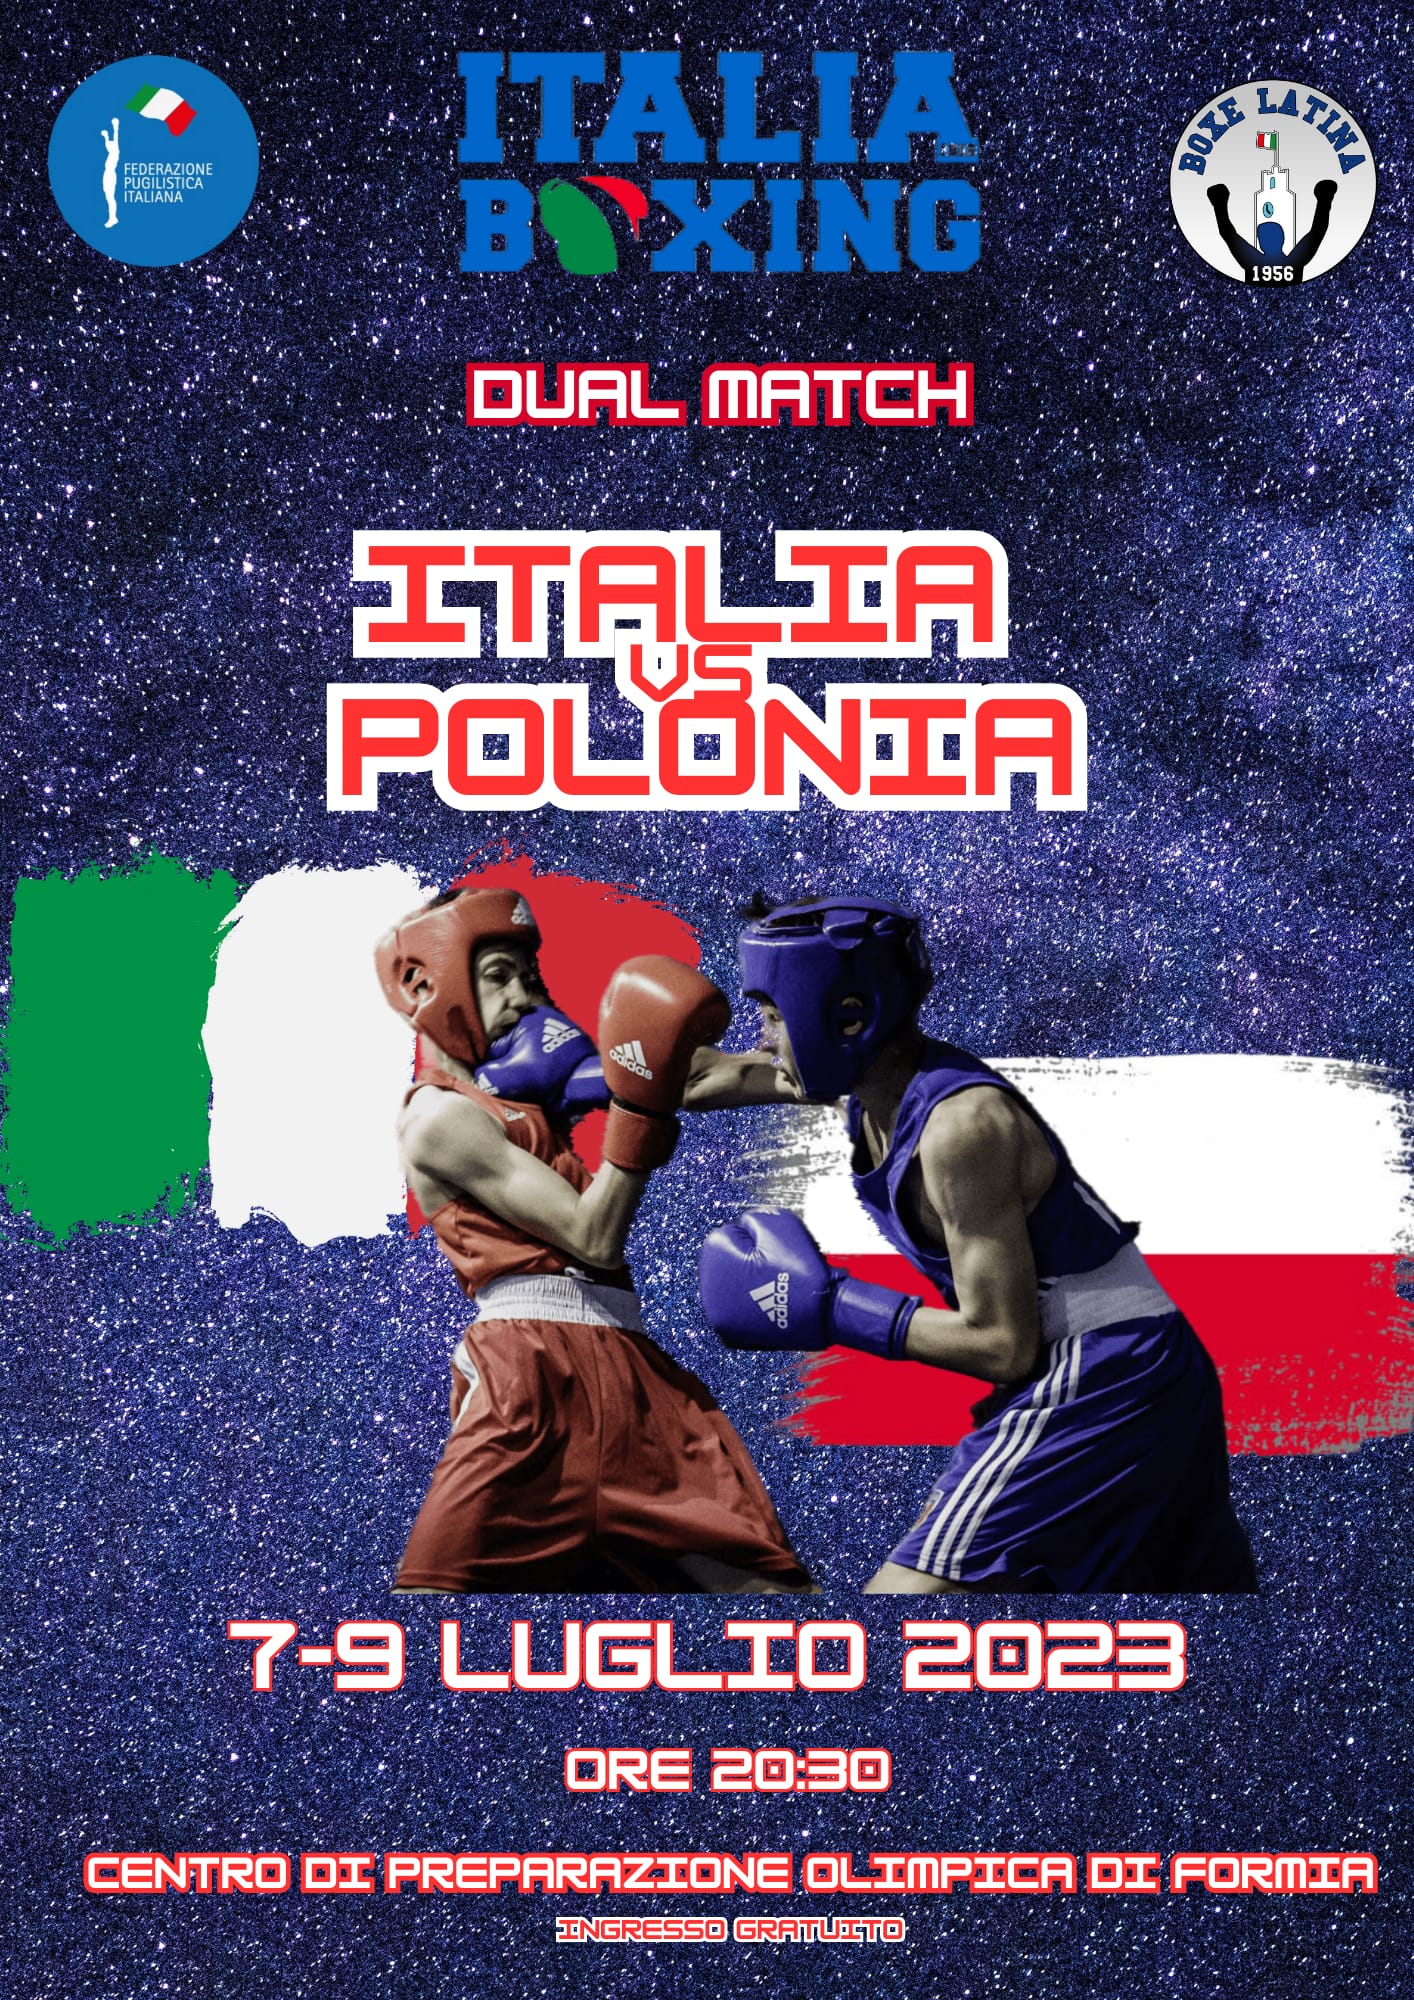 Il 7-9 Luglio a Formia Dual Match tra gli Azzurrini SchoolBoy e la Polonia 